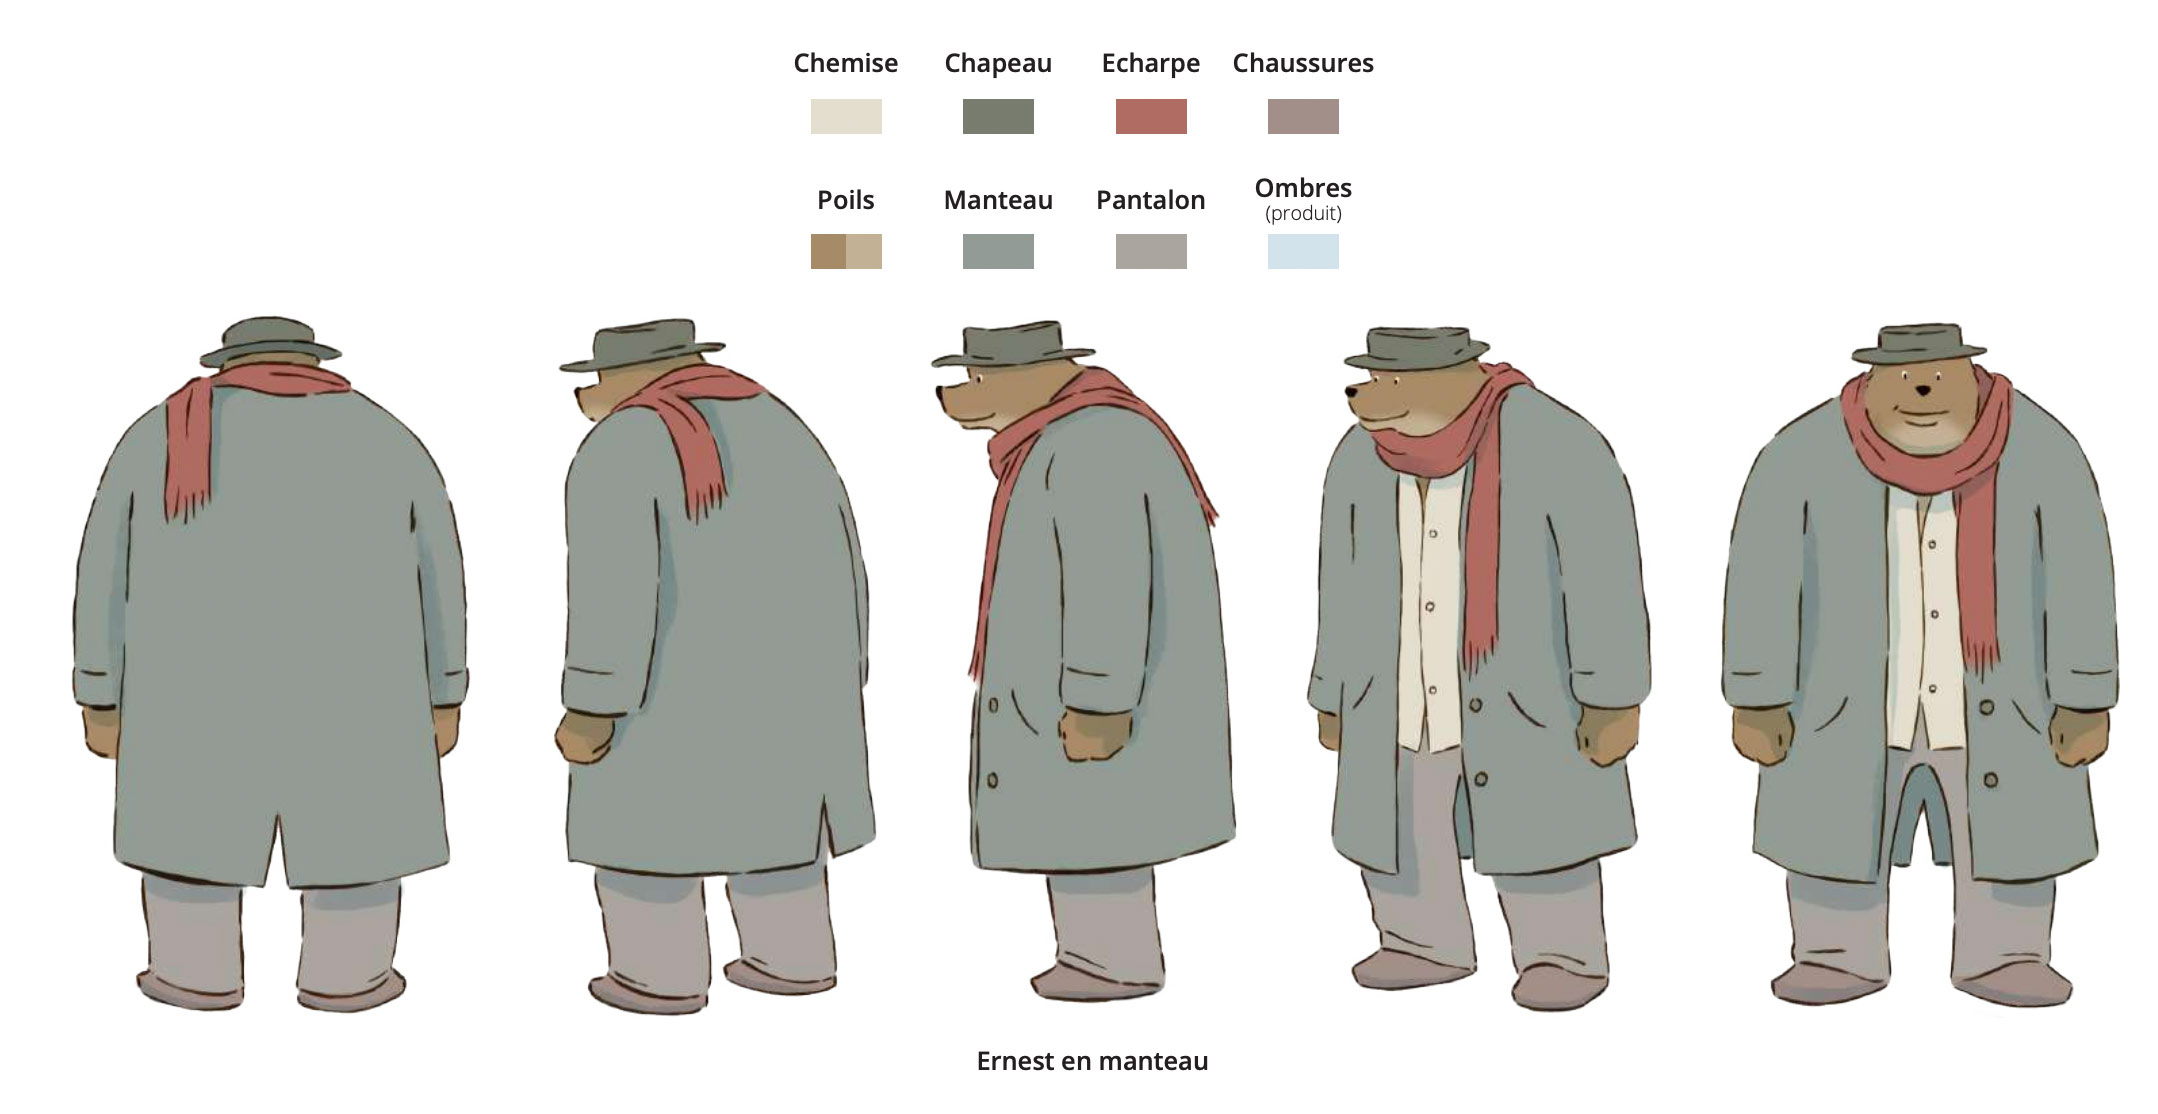 Ernest in coat turnaround